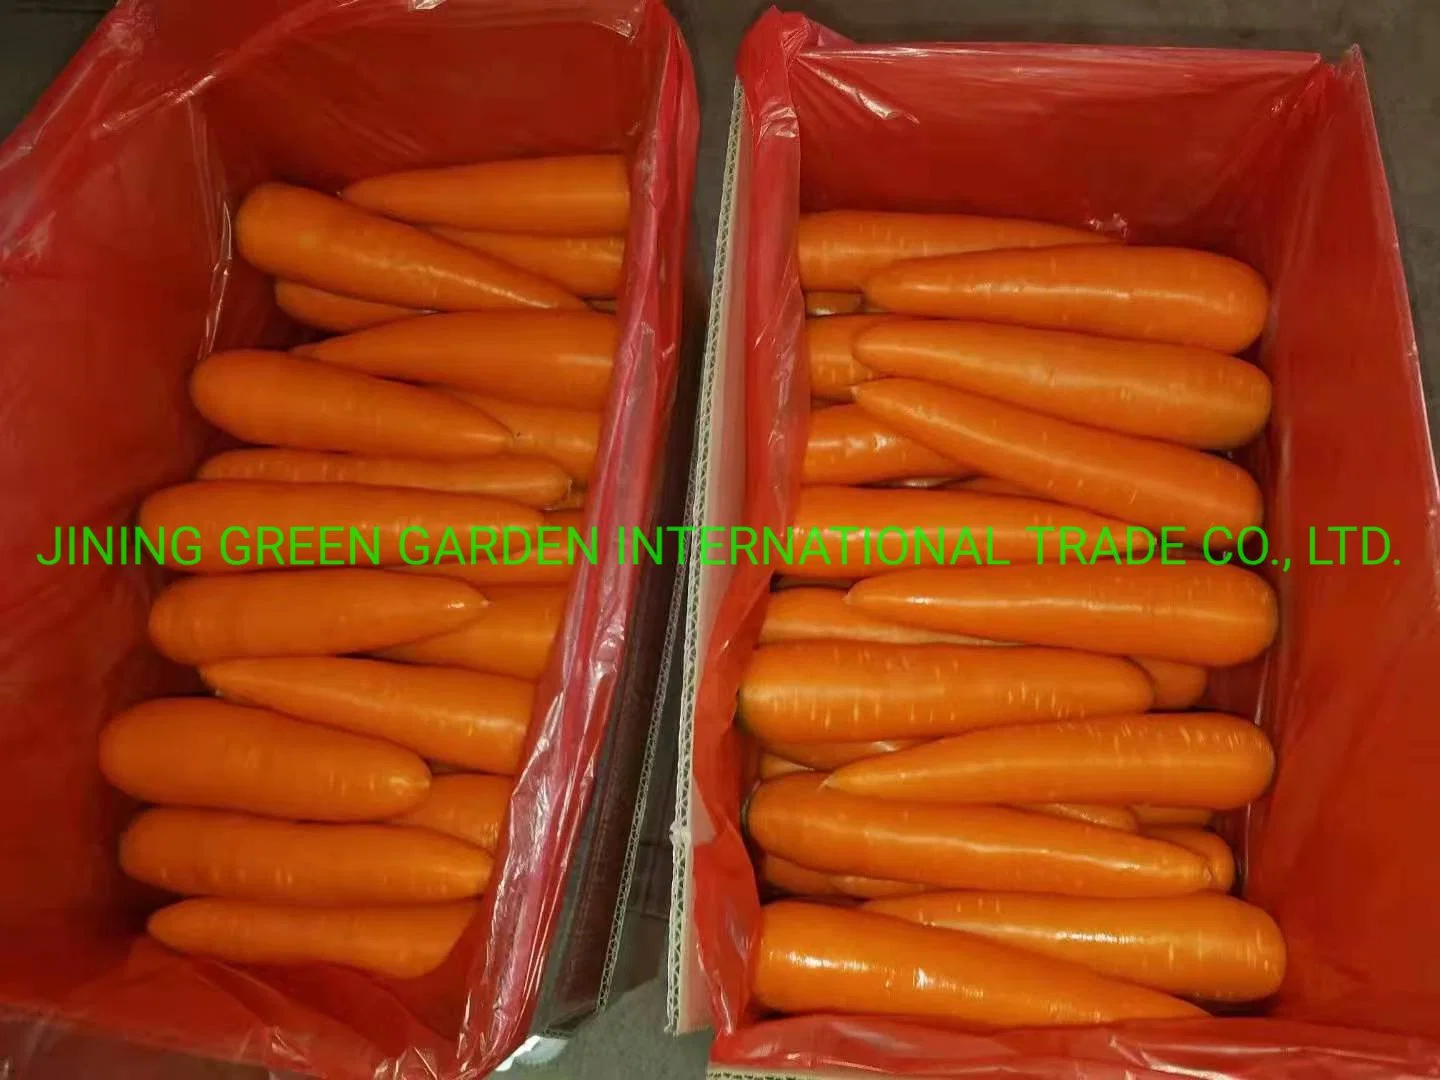 Prix de la carotte lavée de légumes pour bébé doux orange biologique non pelée rouge jaune frais en gros congelé en dés provenant du fournisseur d'usine.